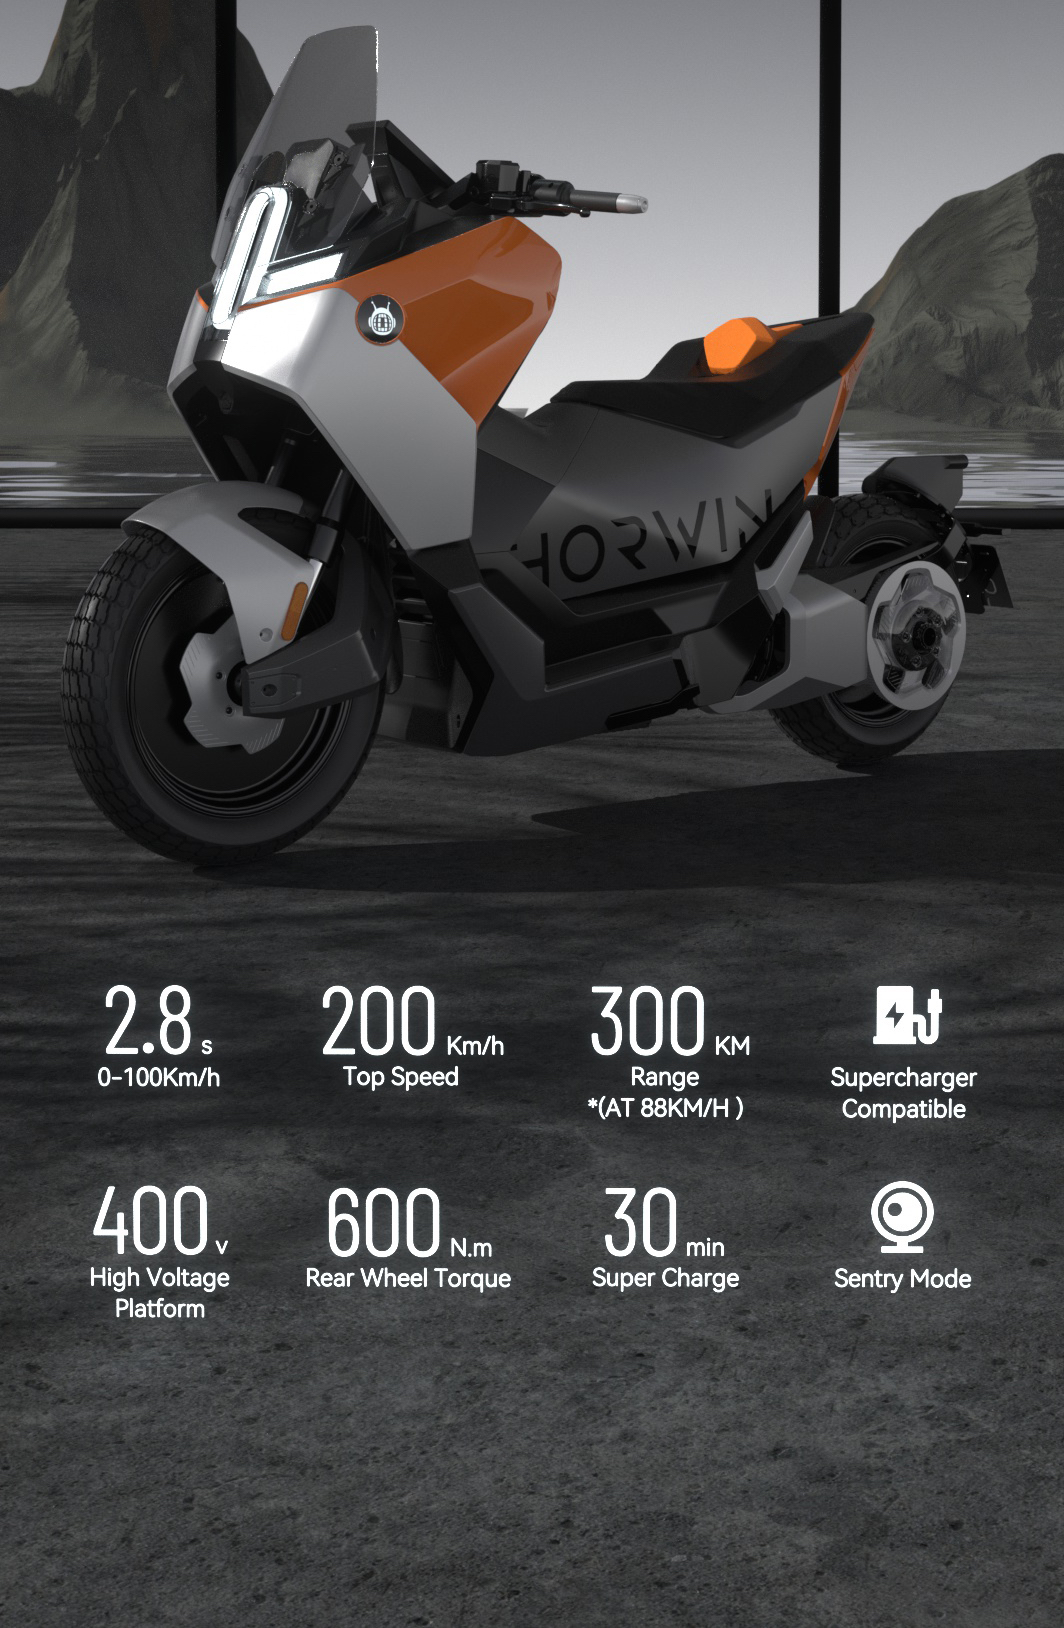 HORWIN SENMENTI 0，一款电动摩托车，展示了一些令人印象深刻的功率配置。媒体来源霍温网站。